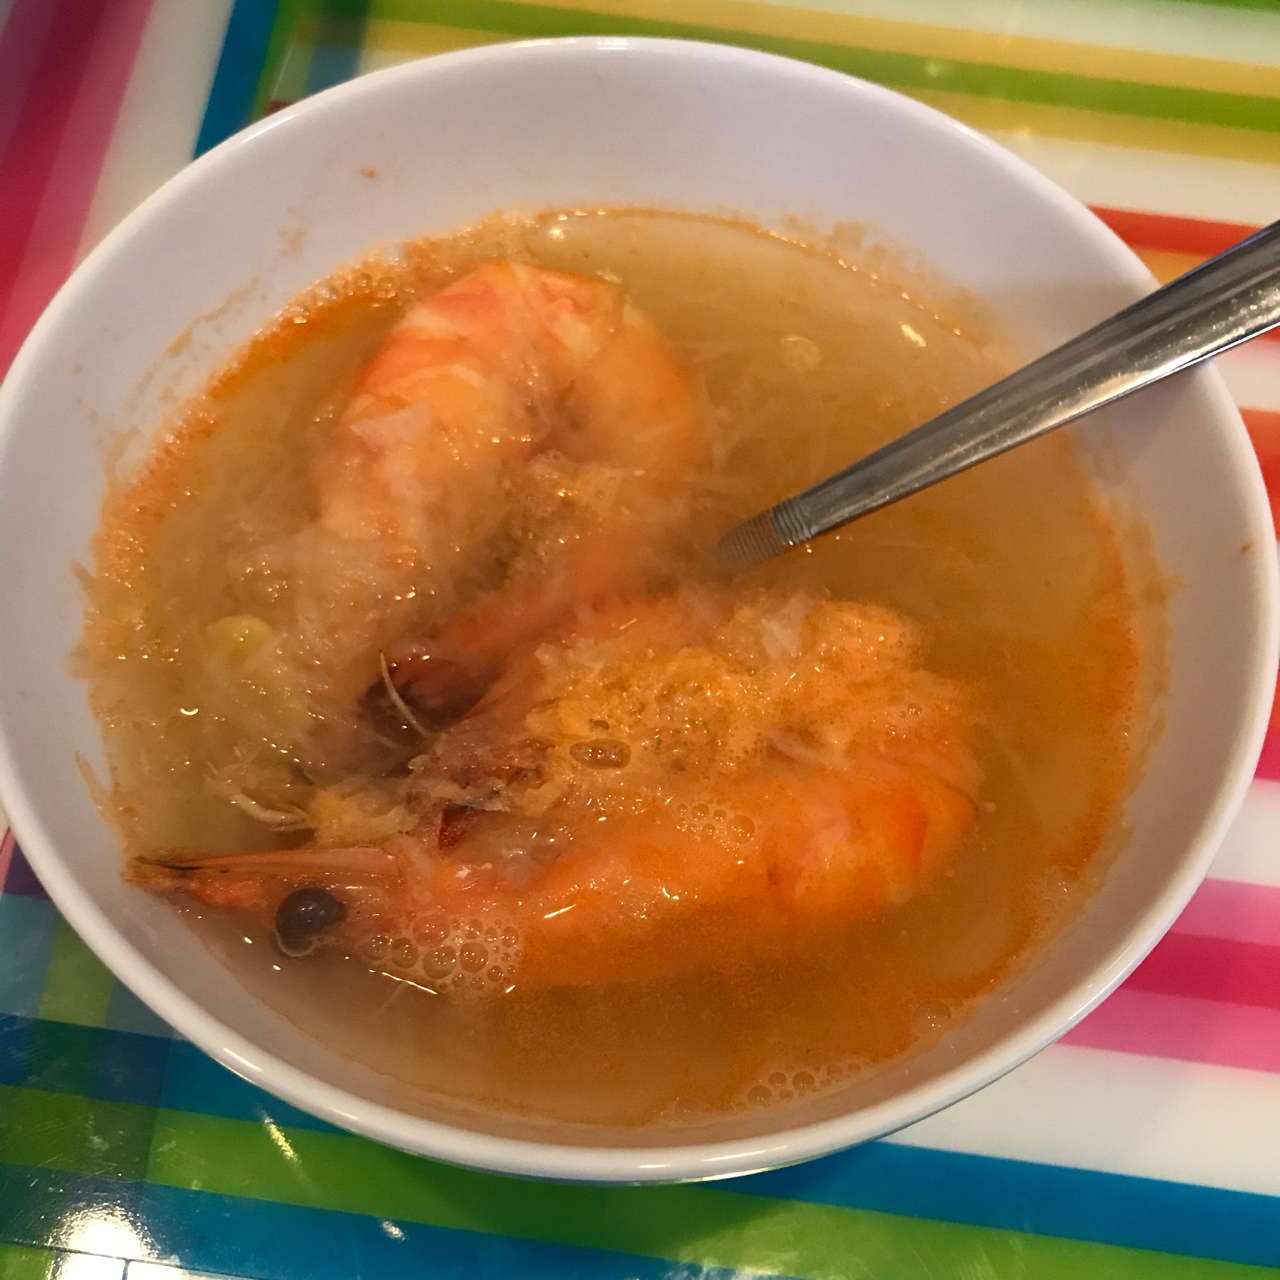 萝卜丝鲜虾汤